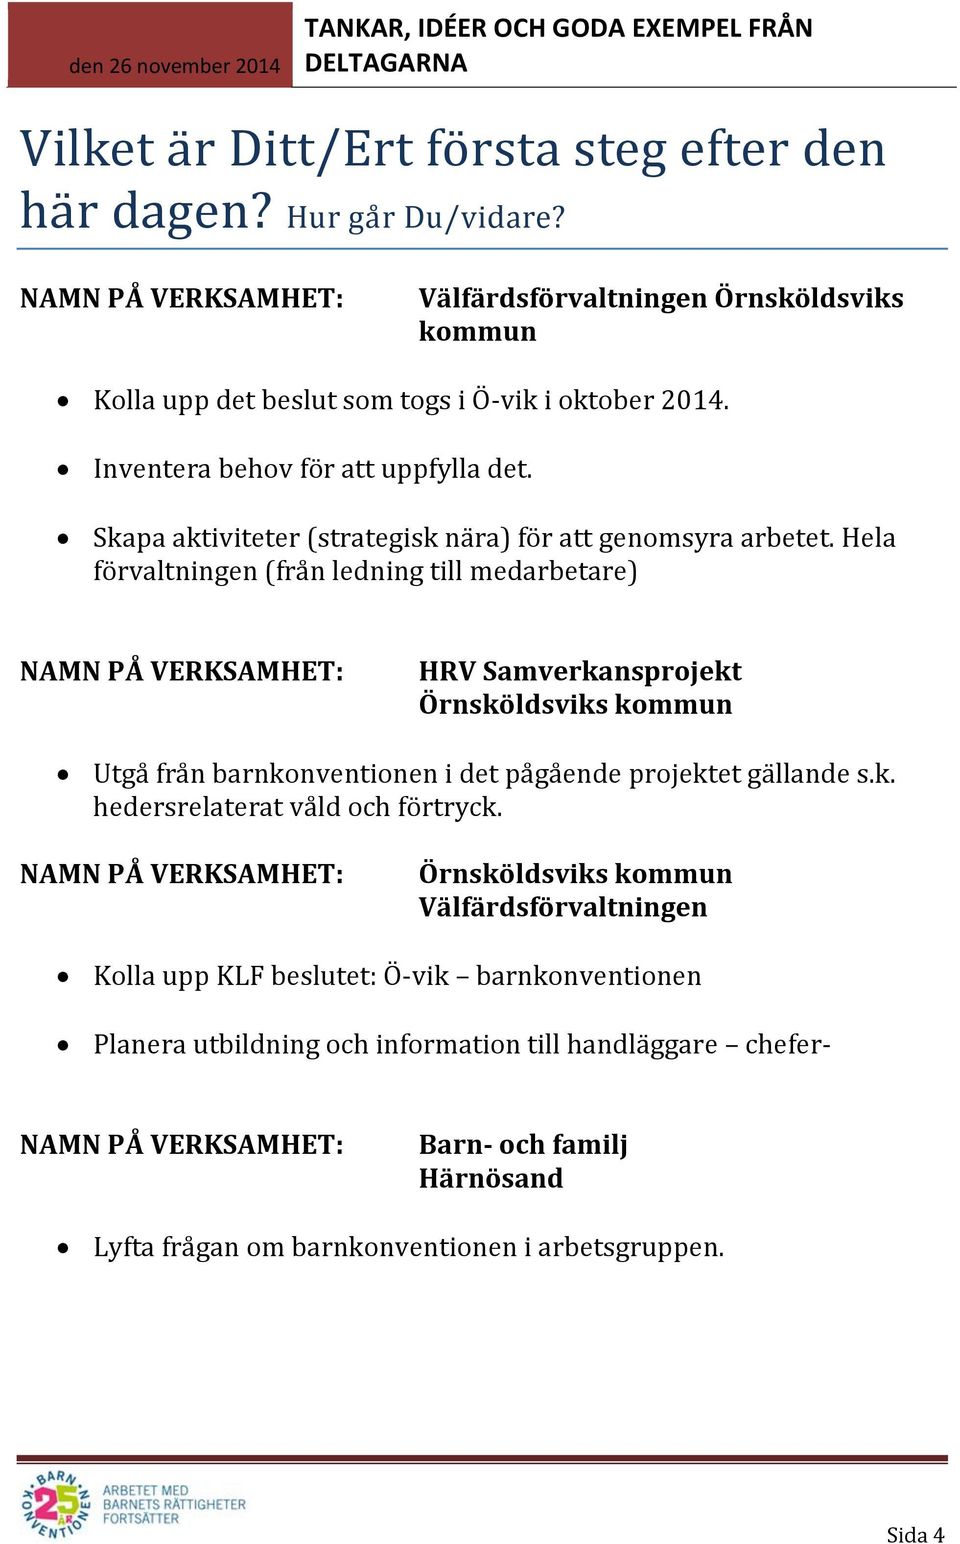 Hela förvaltningen (från ledning till medarbetare) HRV Samverkansprojekt Örnsköldsviks kommun Utgå från barnkonventionen i det pågående projektet gällande s.k. hedersrelaterat våld och förtryck.